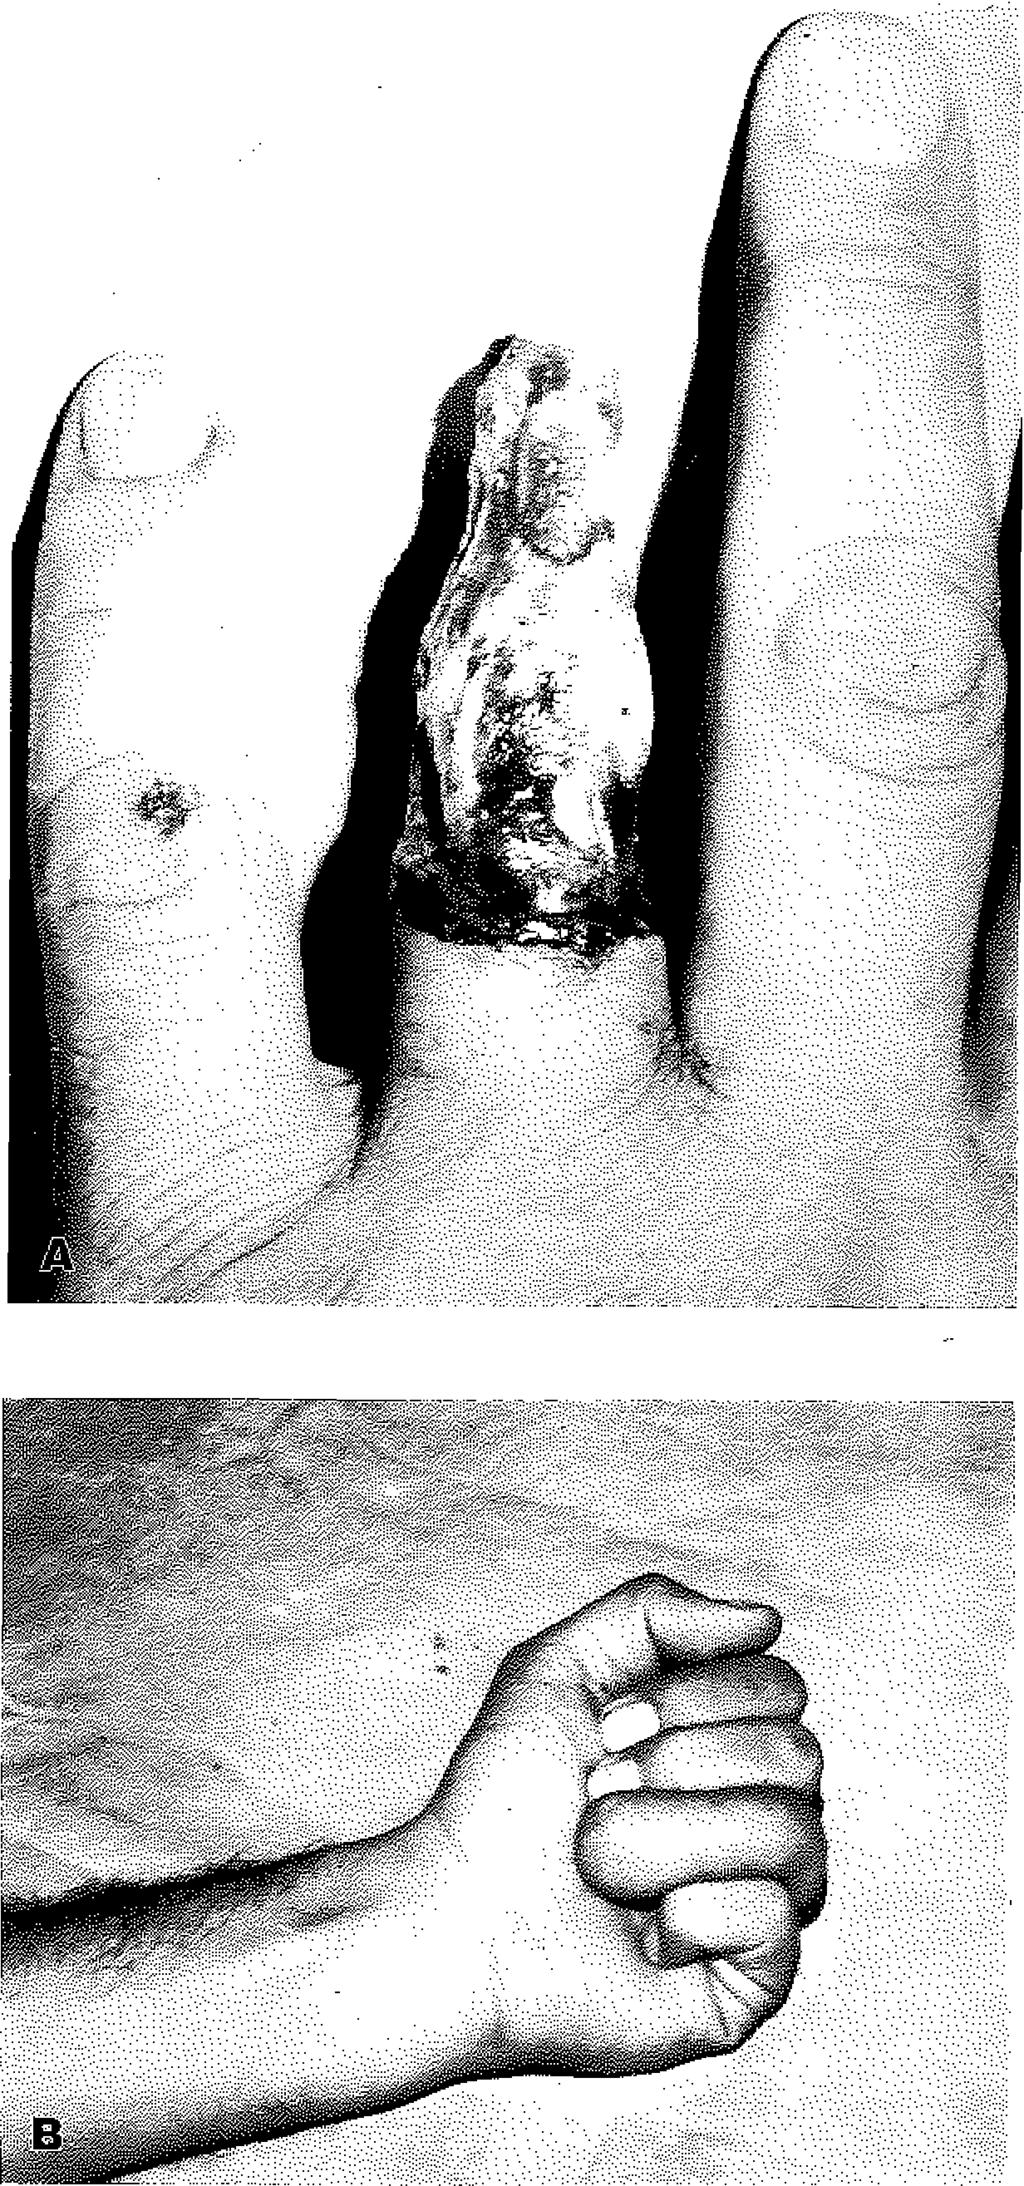 Yedi olguya ray amputasyon yapıldı. Bir olguda soyulmuş parmak distal pediküllü fasyal posterior interosseos flep ile Örtülerek üzeri kısmi kalınlıkta deri greftiyle kapatıldı.